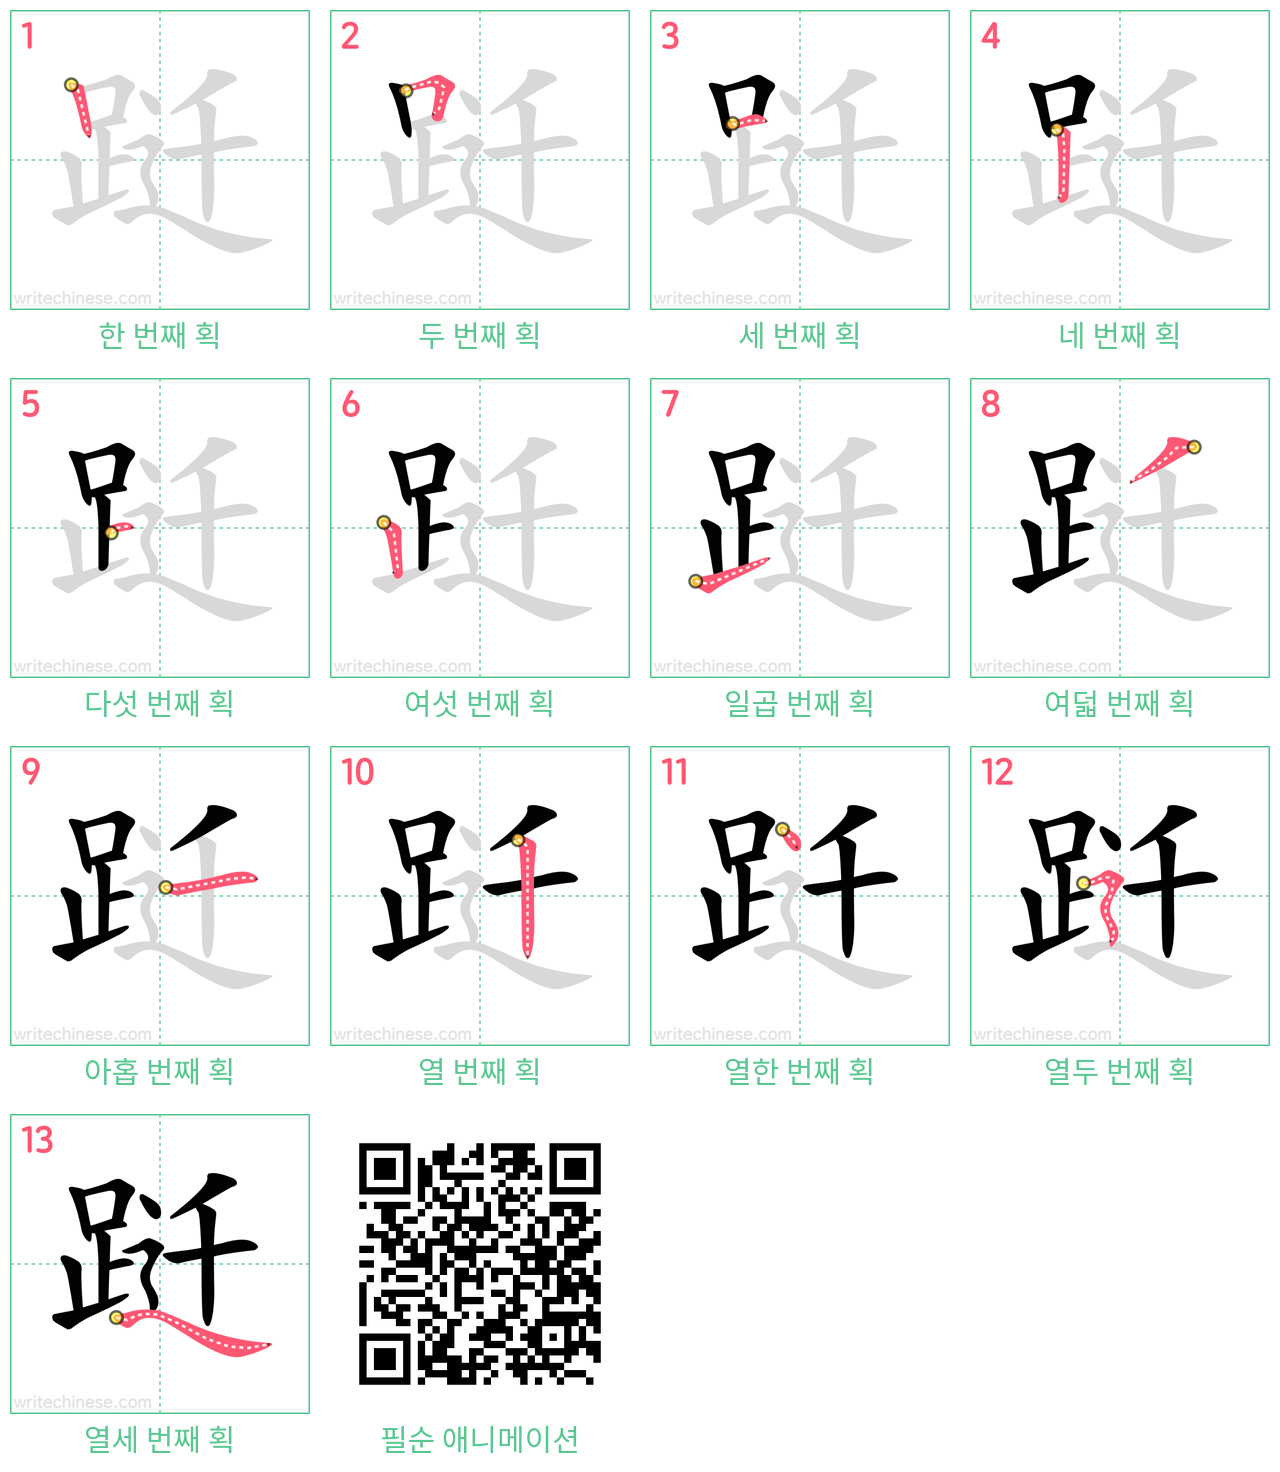 跹 step-by-step stroke order diagrams